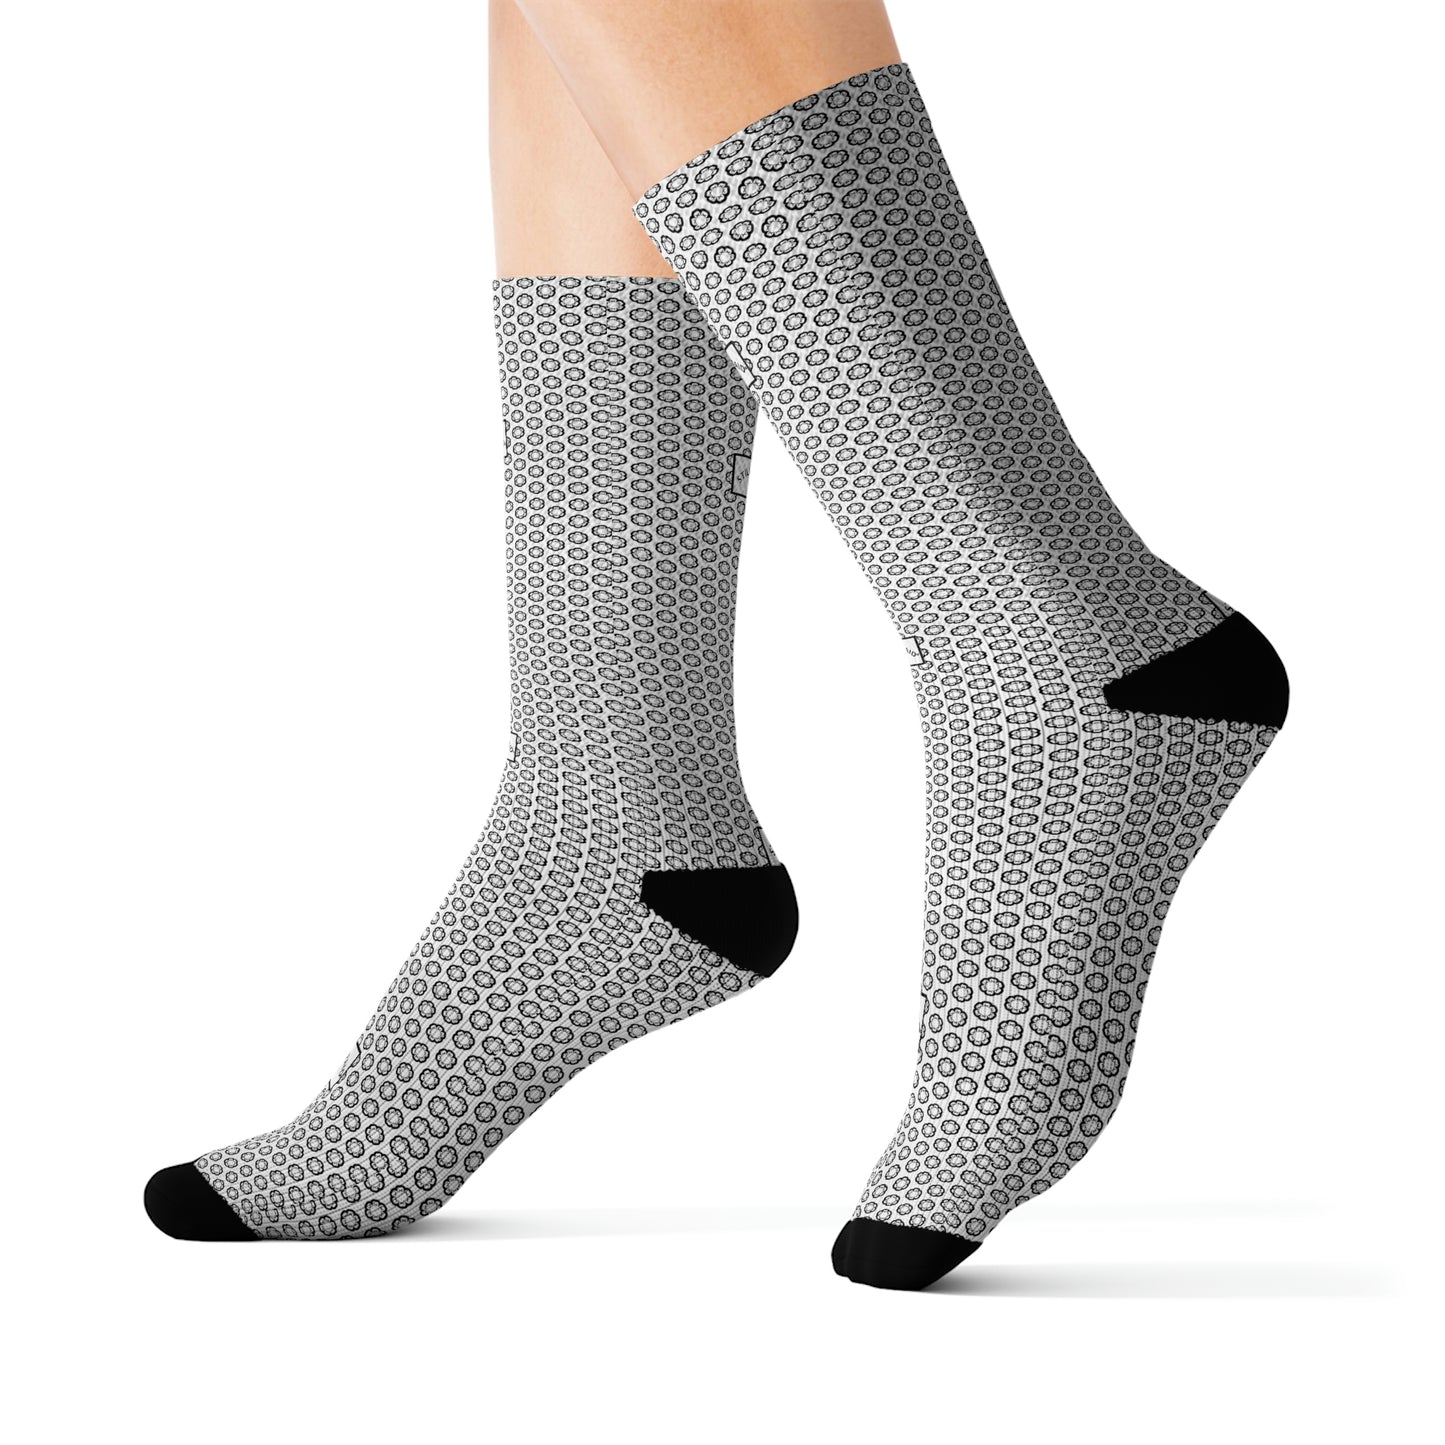 STILLGETPAID APPAREL LABEL Sublimation Socks